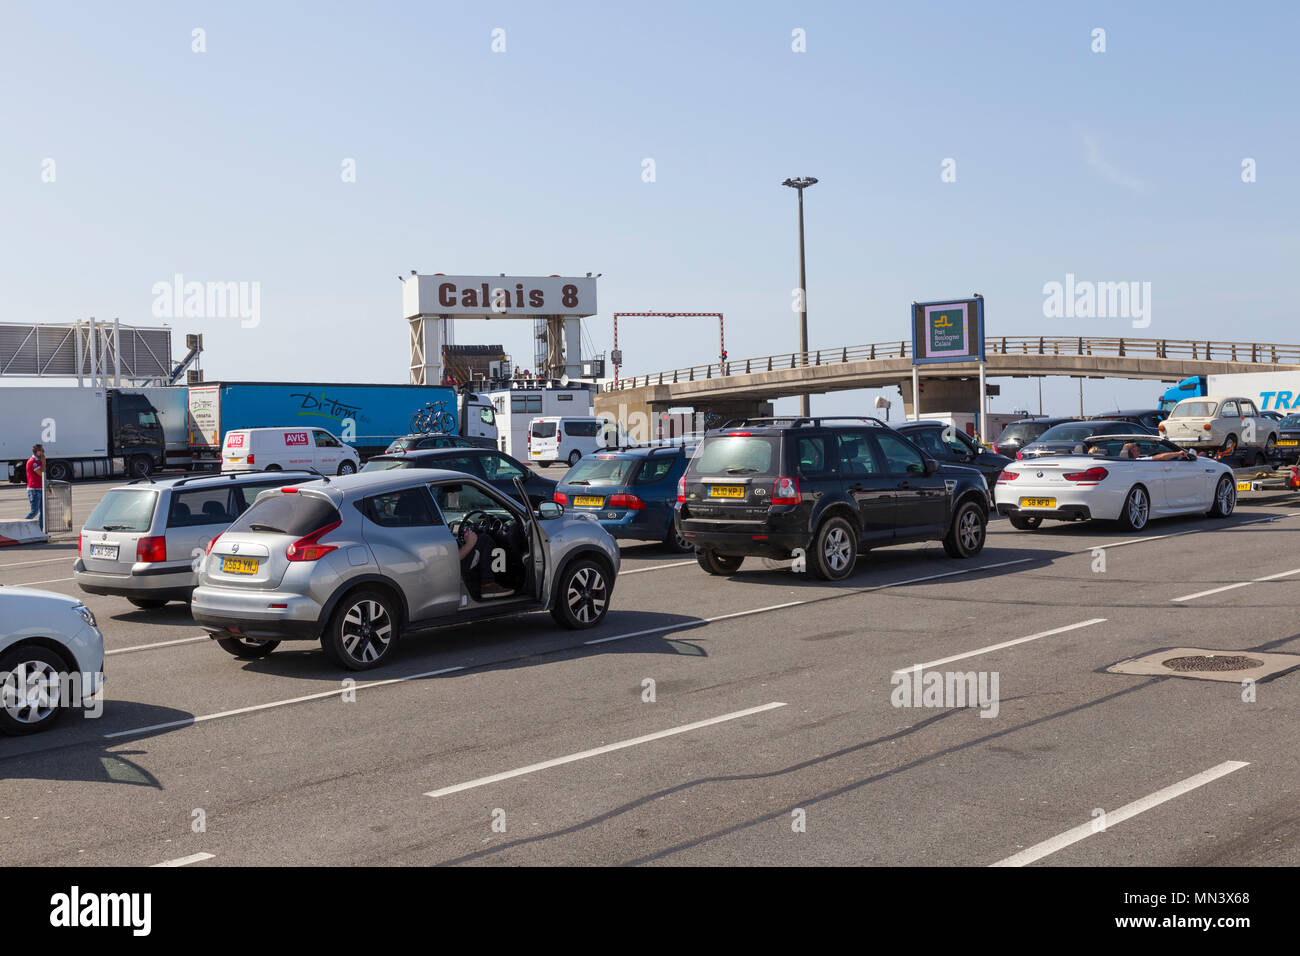 Calais Terminal, France Stock Photo